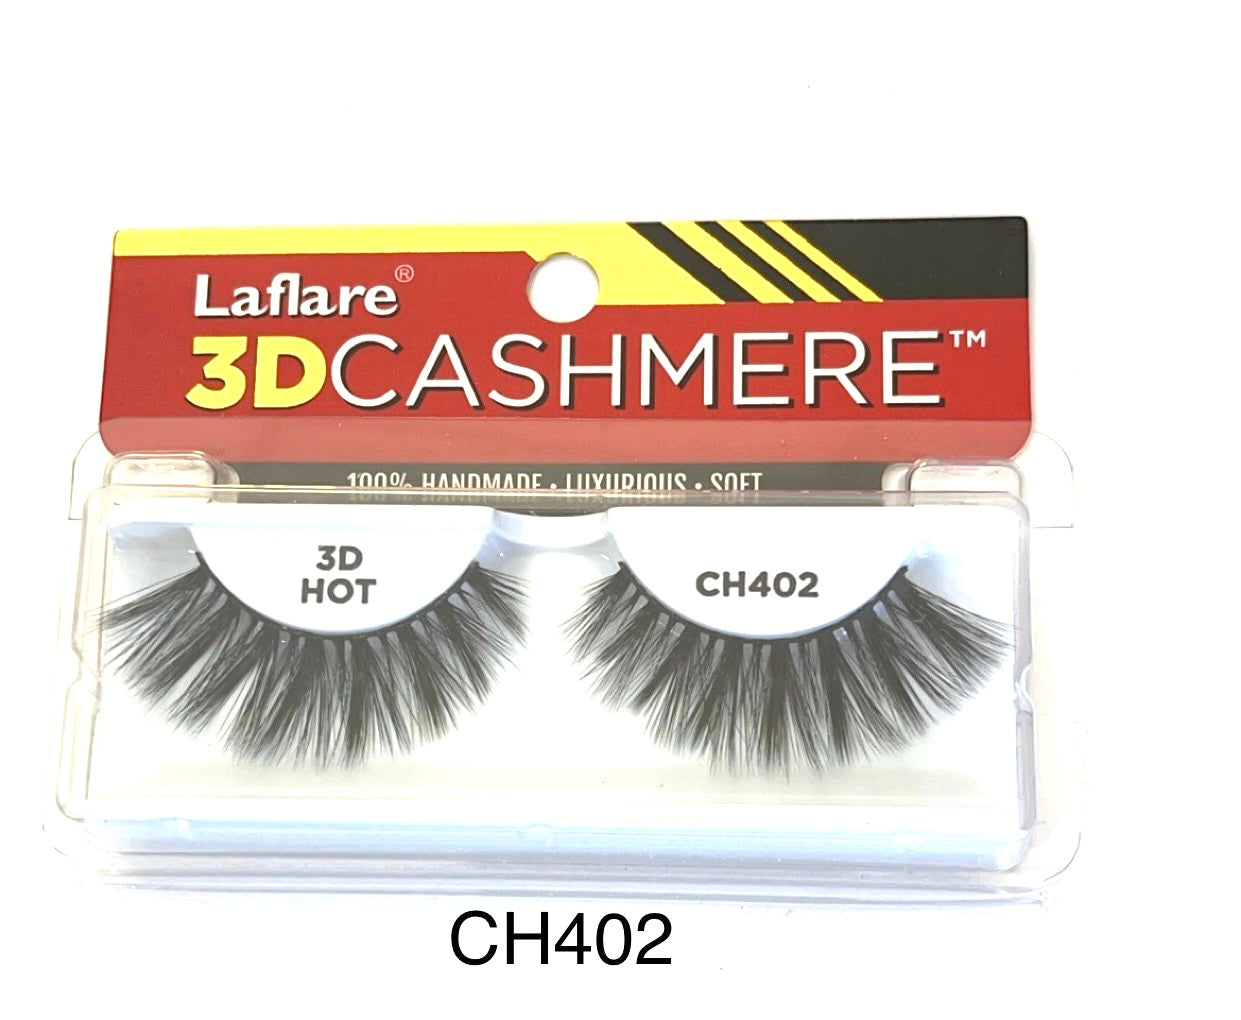 Laflare 3D Cashmere CH402